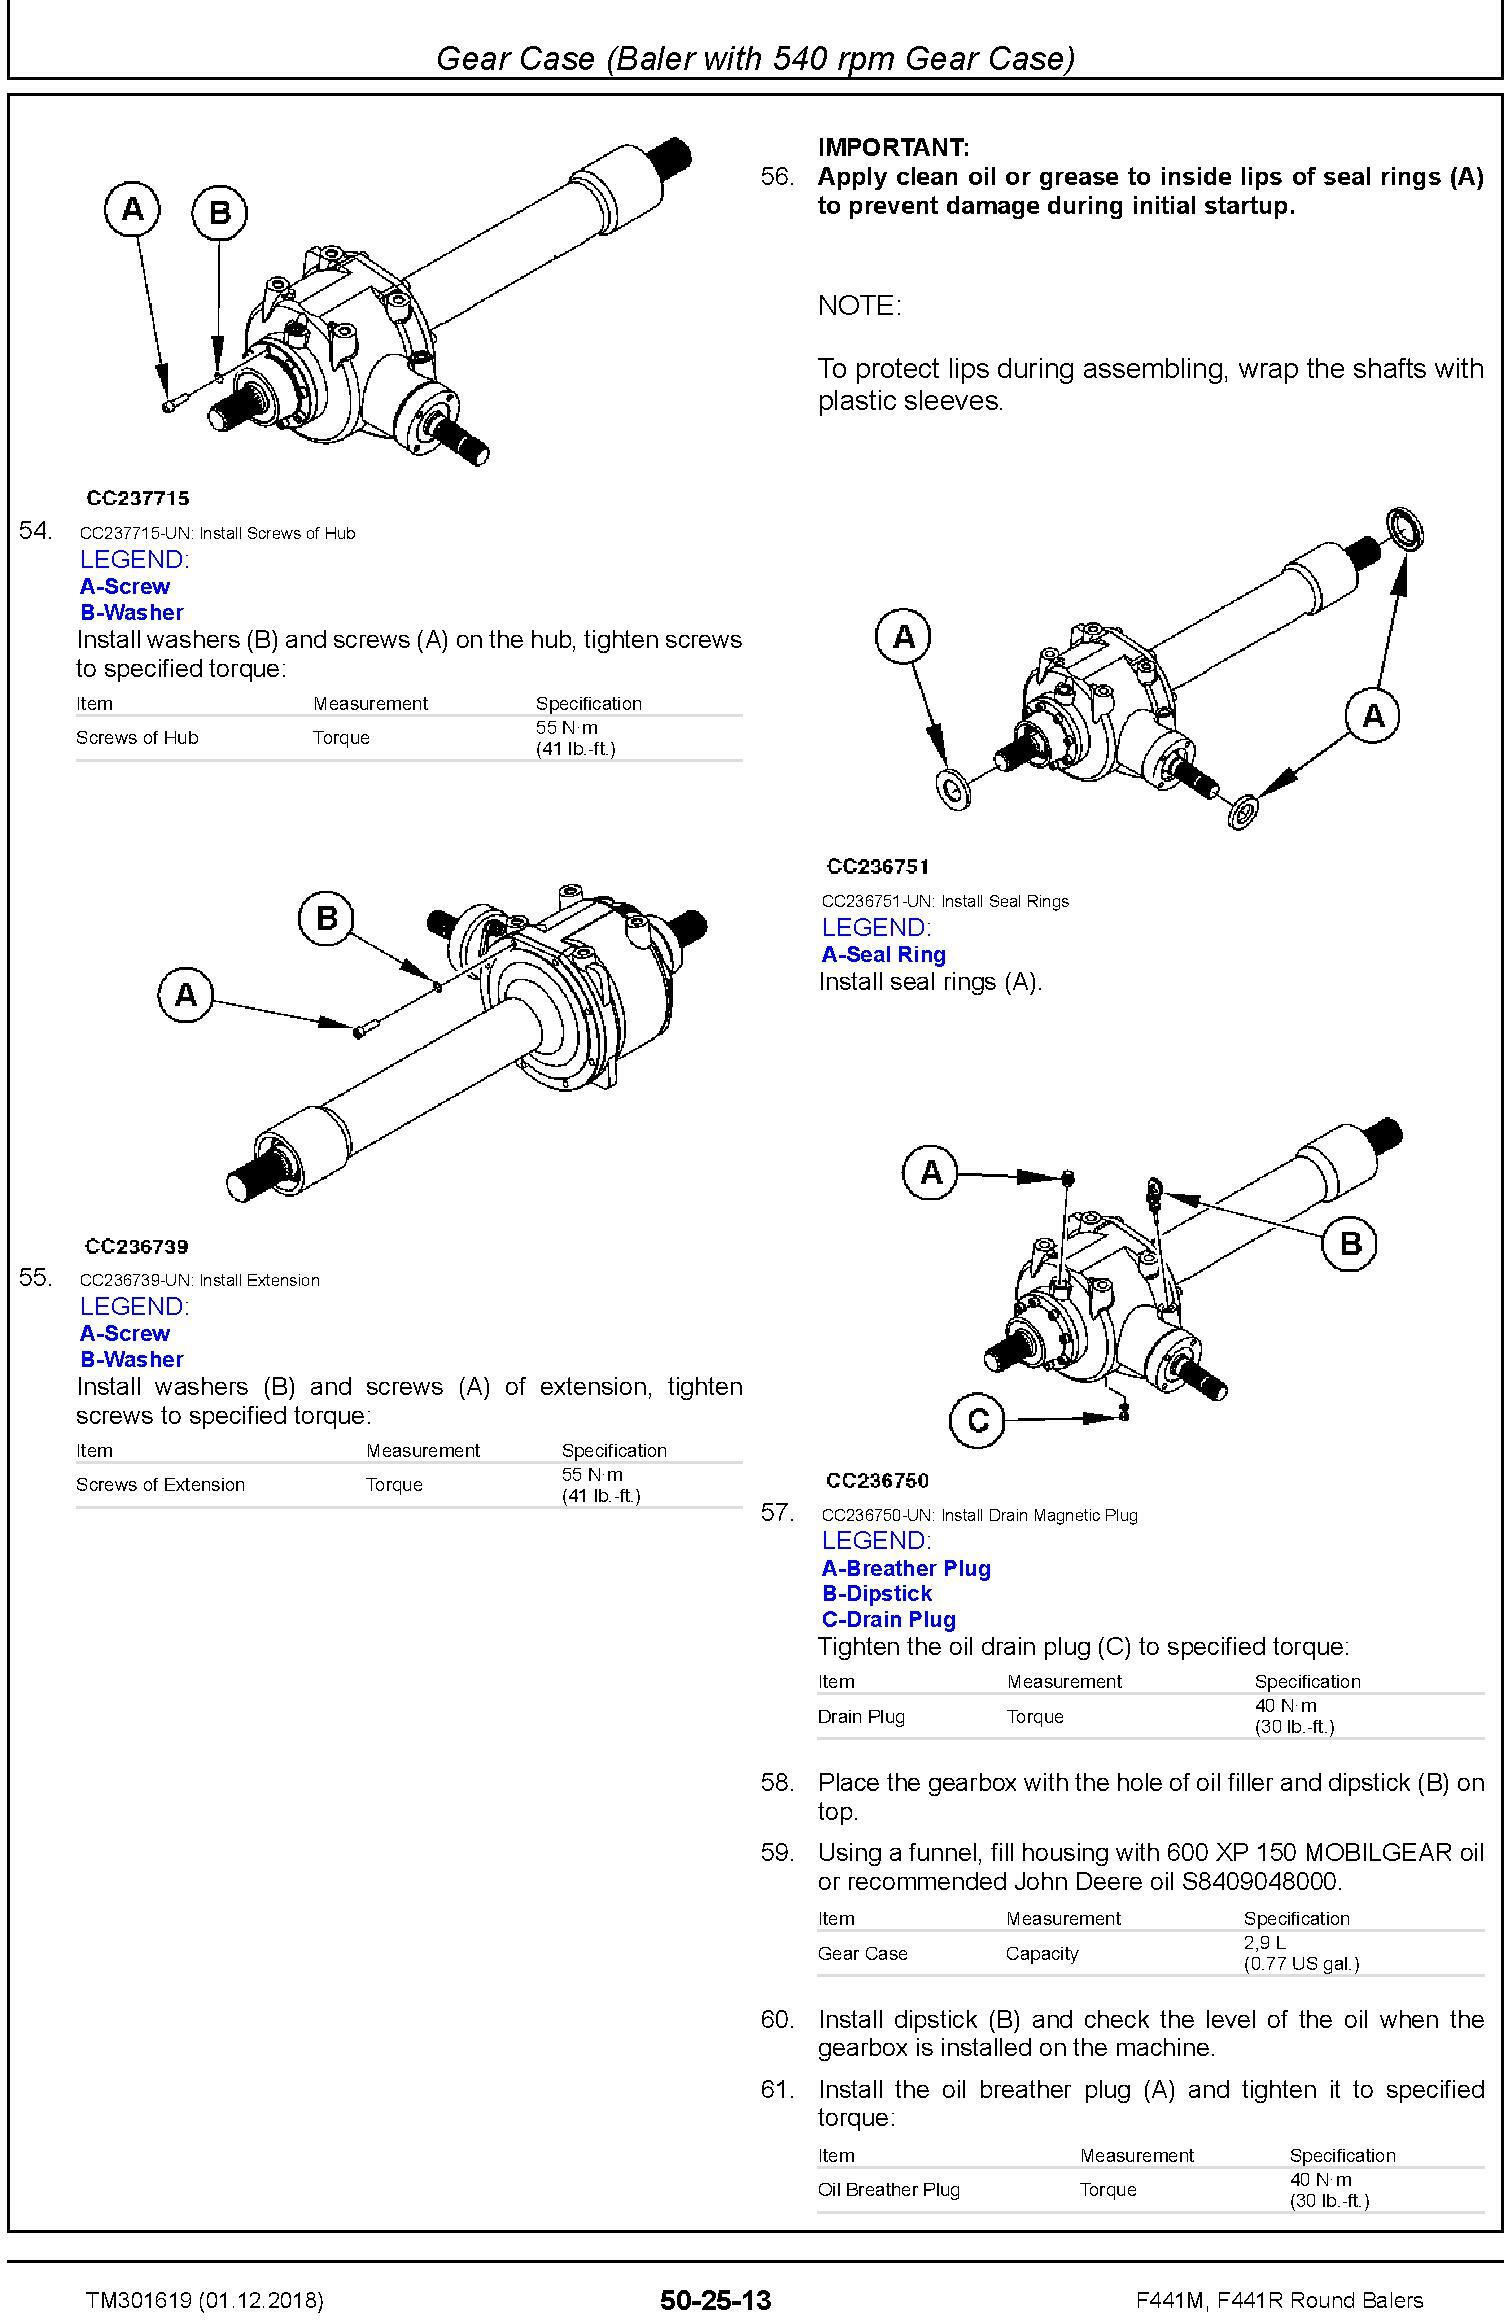 John Deere F441M, F441R Round Balers Service Repair Technical Manual (TM301619) - 3